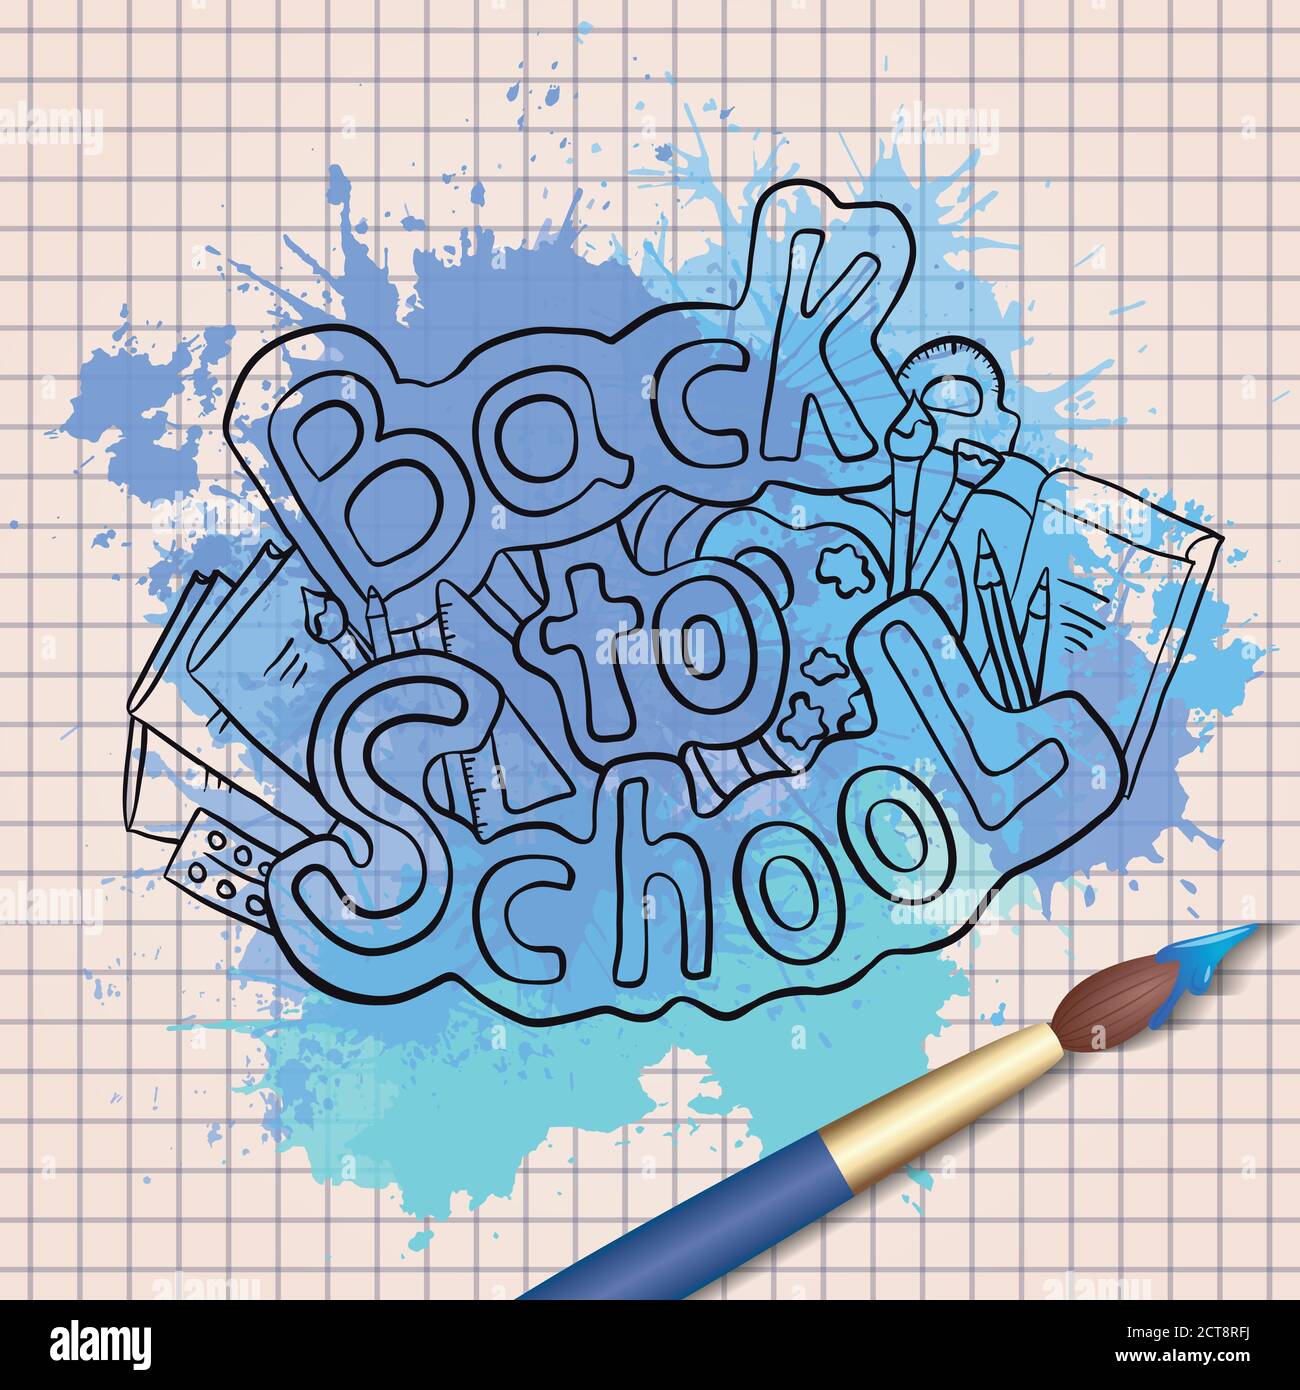 Doodle Text zurück in die Schule mit verschiedenen Schulbedarf und blauen Aquarell-Spritzer mit Aquarell-Pinsel. Kreativstudio, Kunstunterricht. Stock Vektor